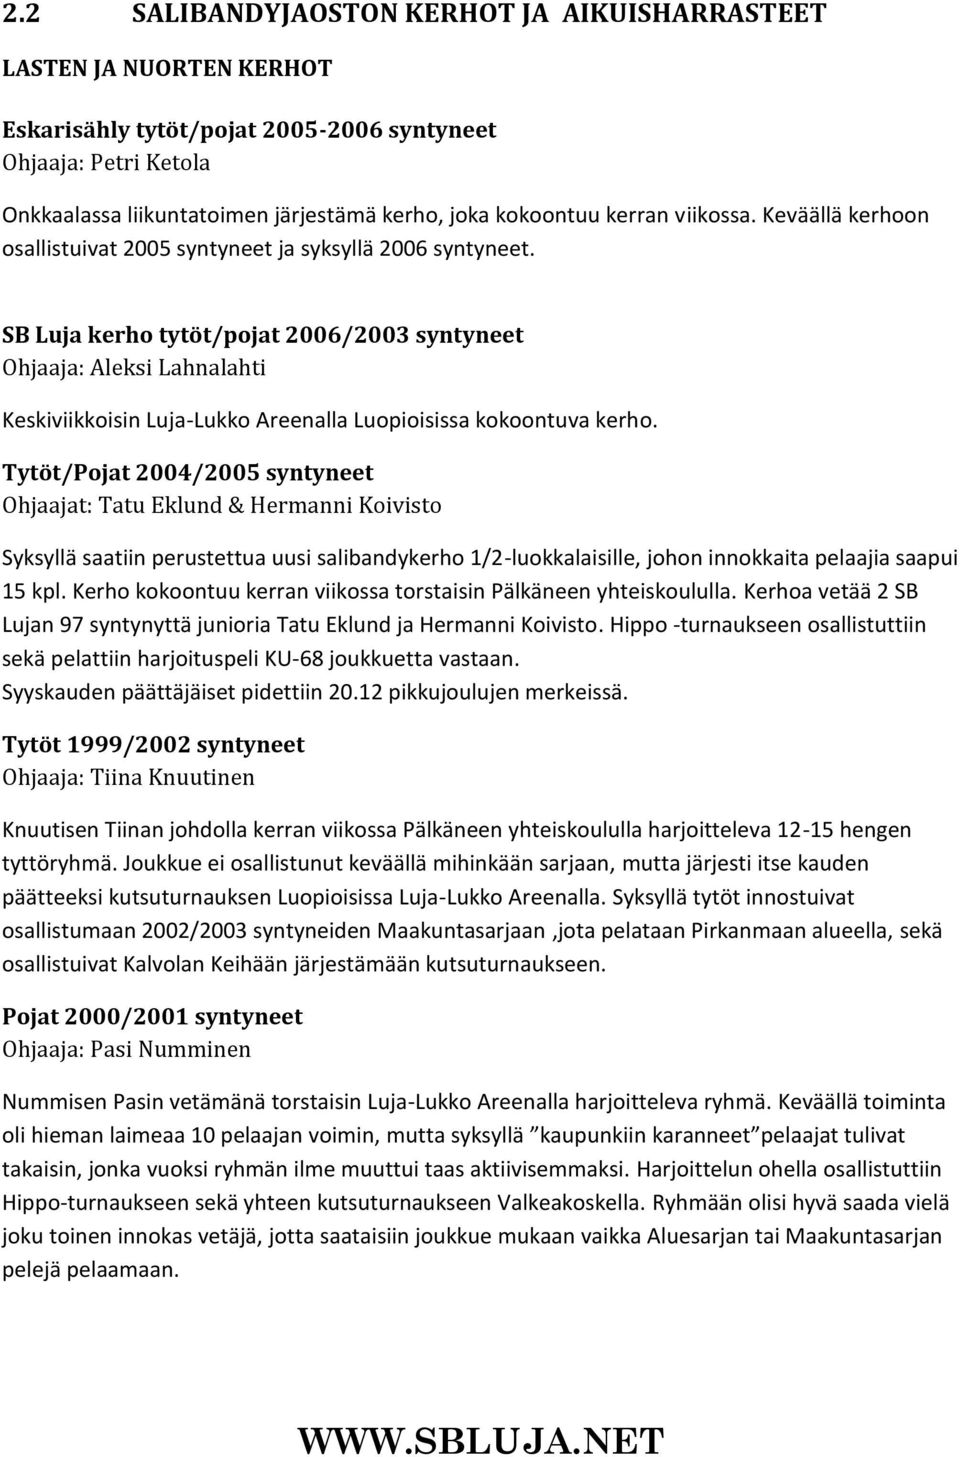 SB Luja kerho tytöt/pojat 2006/2003 syntyneet Ohjaaja: Aleksi Lahnalahti Keskiviikkoisin Luja-Lukko Areenalla Luopioisissa kokoontuva kerho.